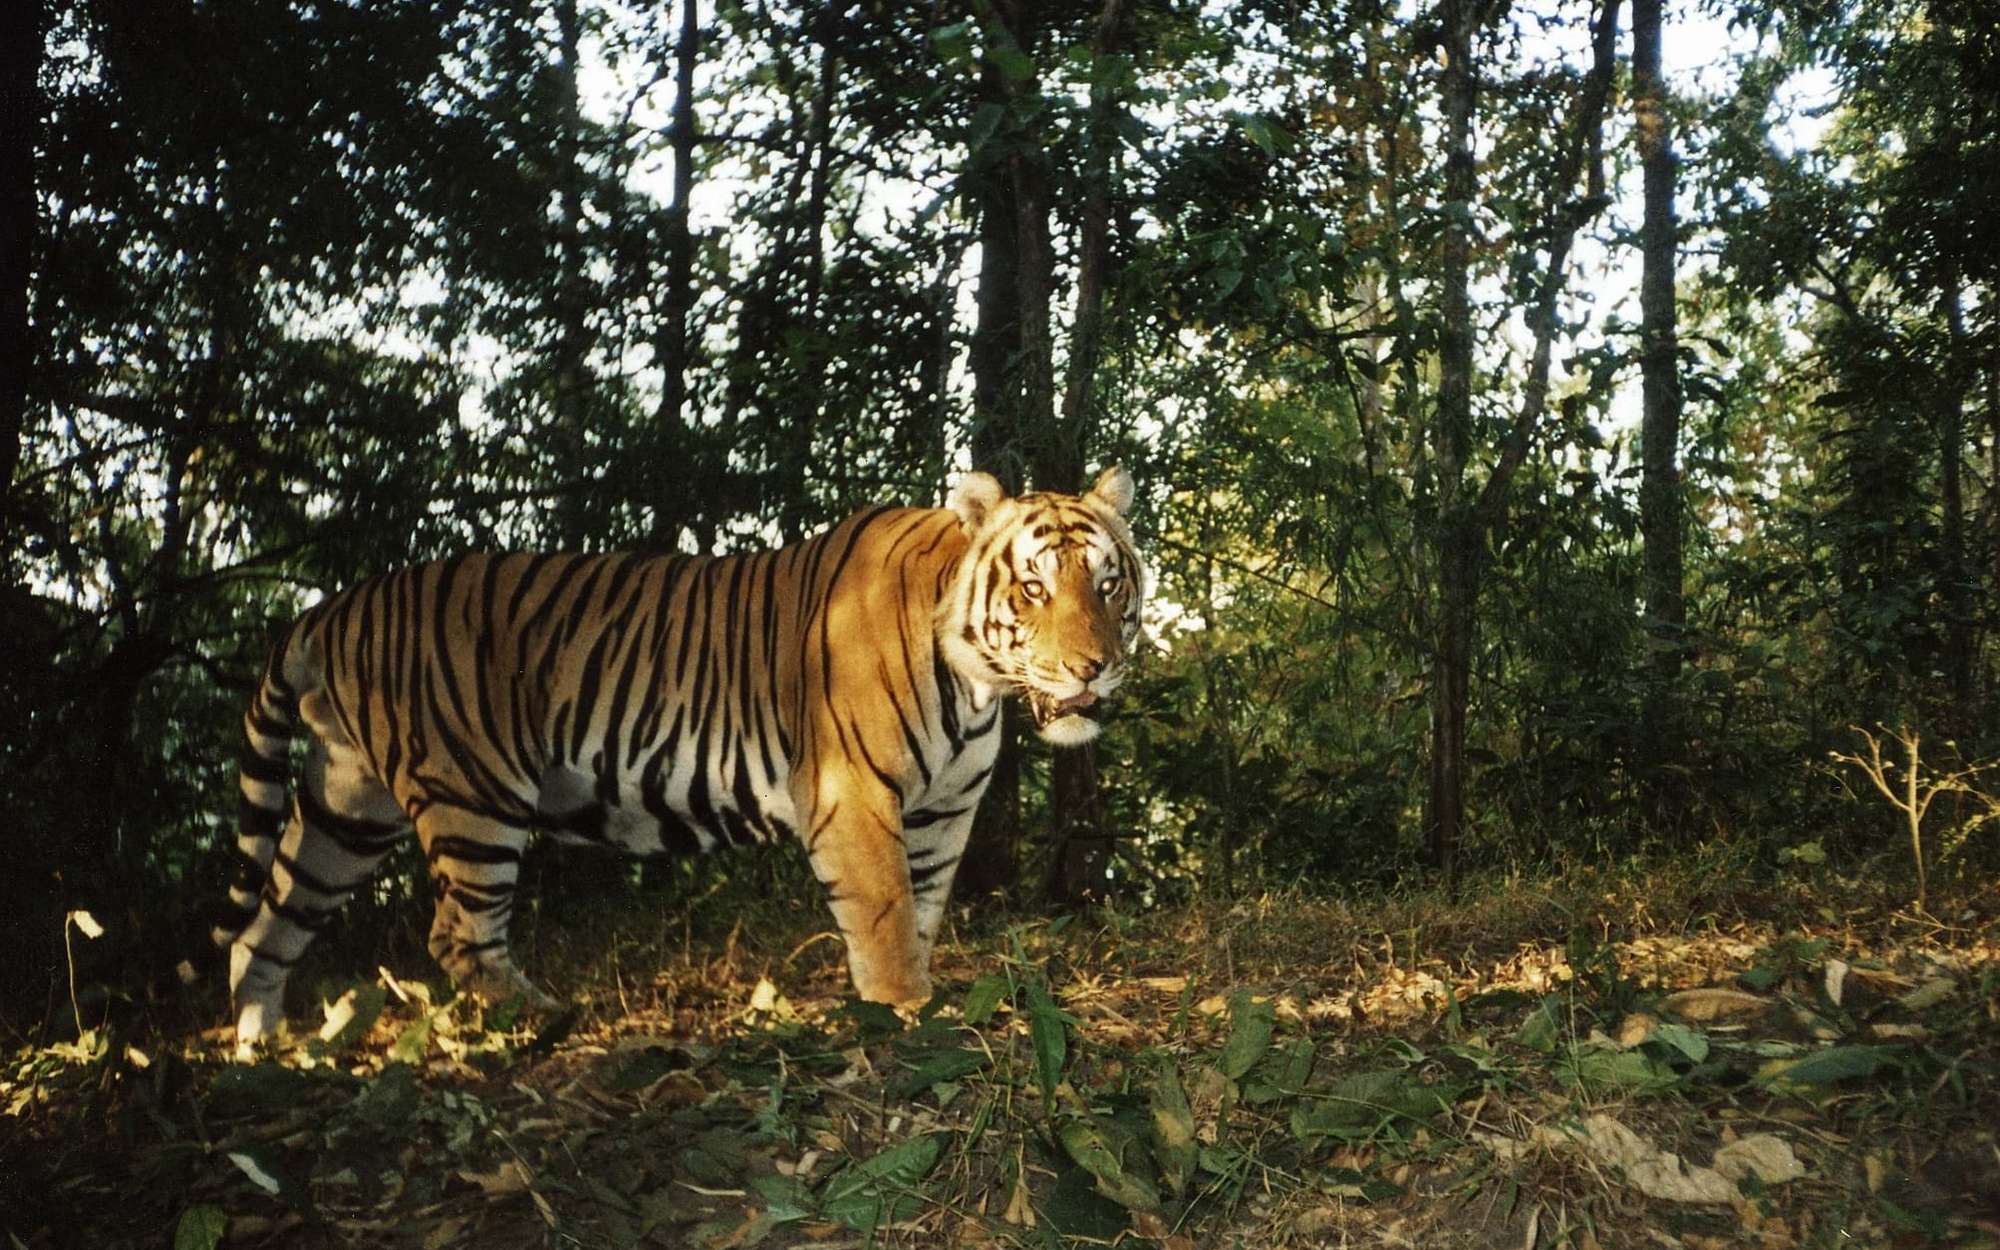 Chuyên gia nói về phát hiện hổ ở Sơn La